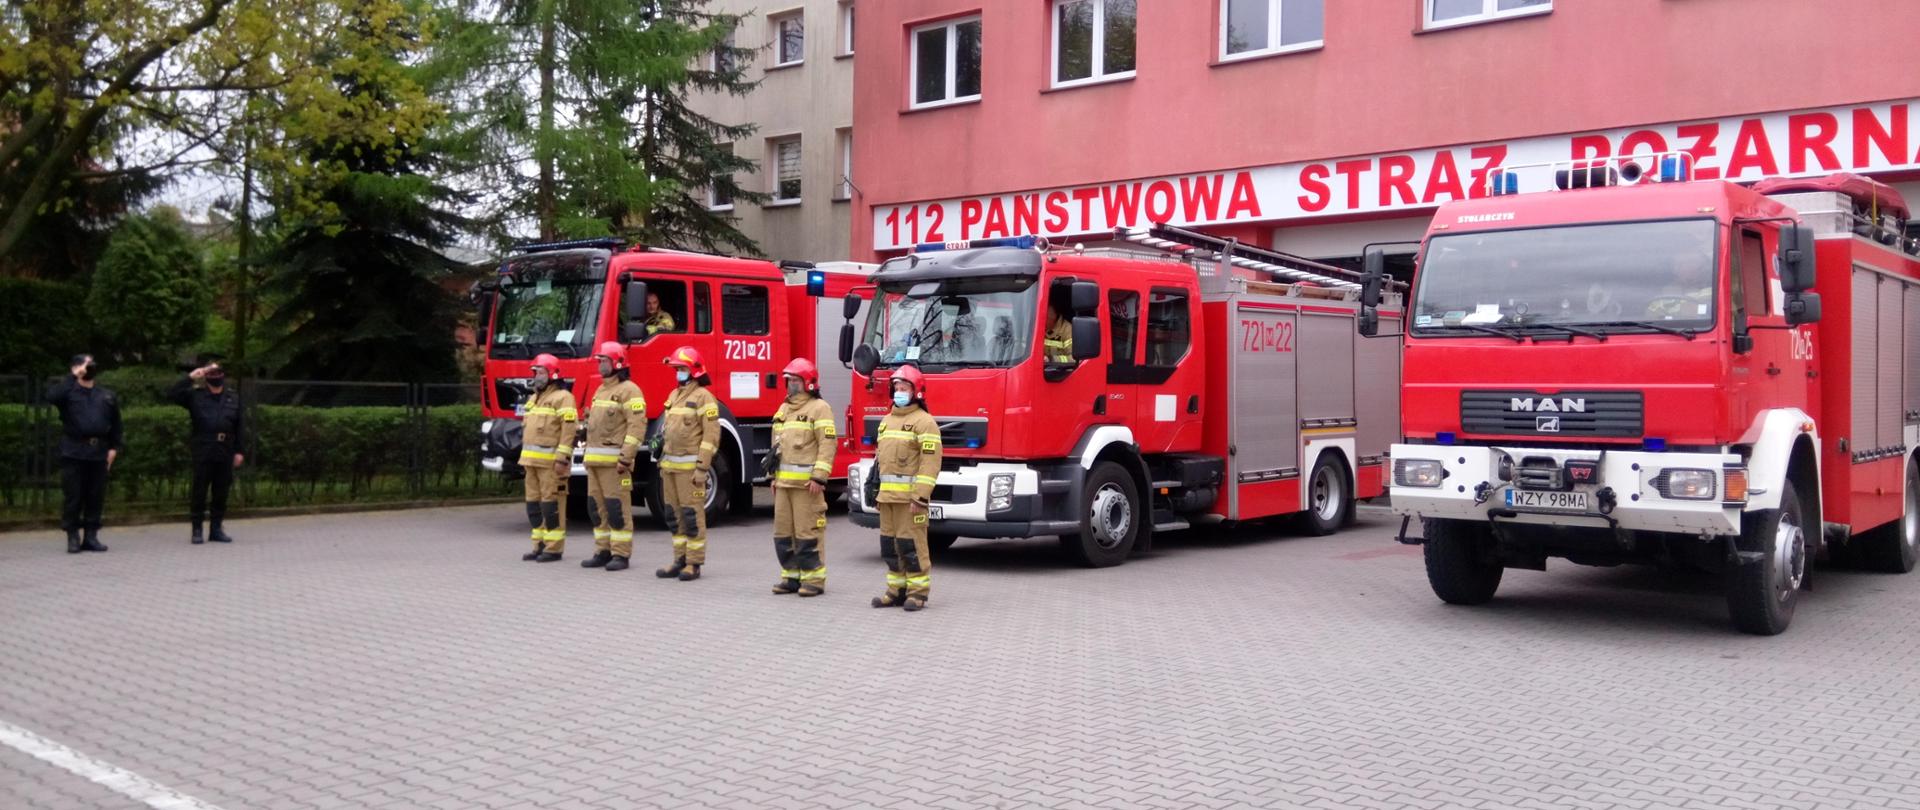 Strażacy na tle samochodów i strażnicy w Żyrardowie